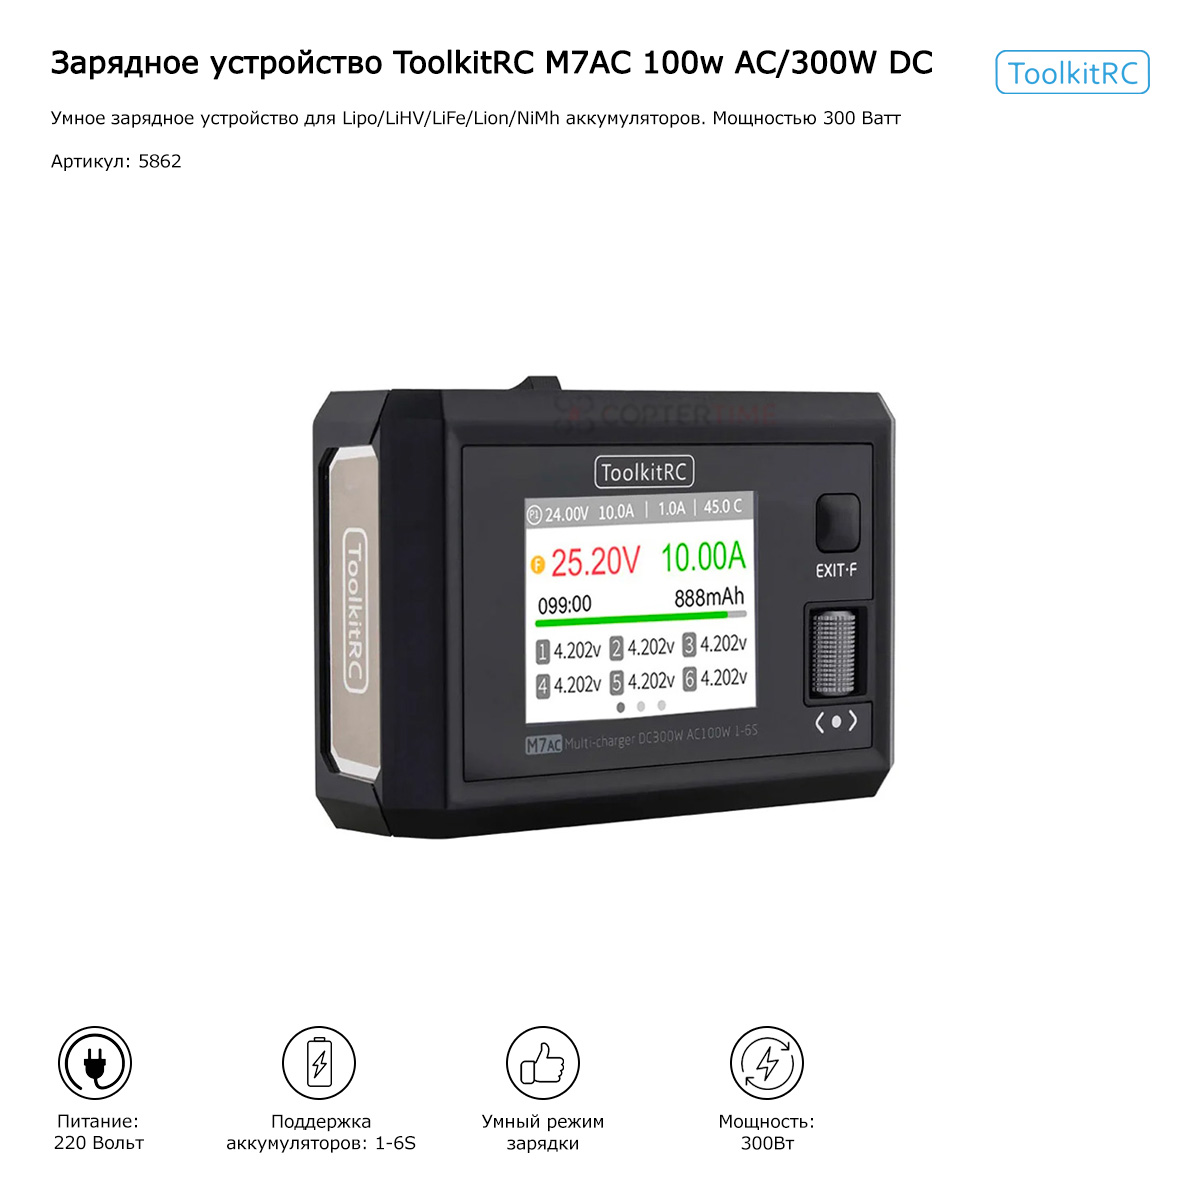 Зарядное устройство ToolkitRC M7AC 100W AC/300W DC